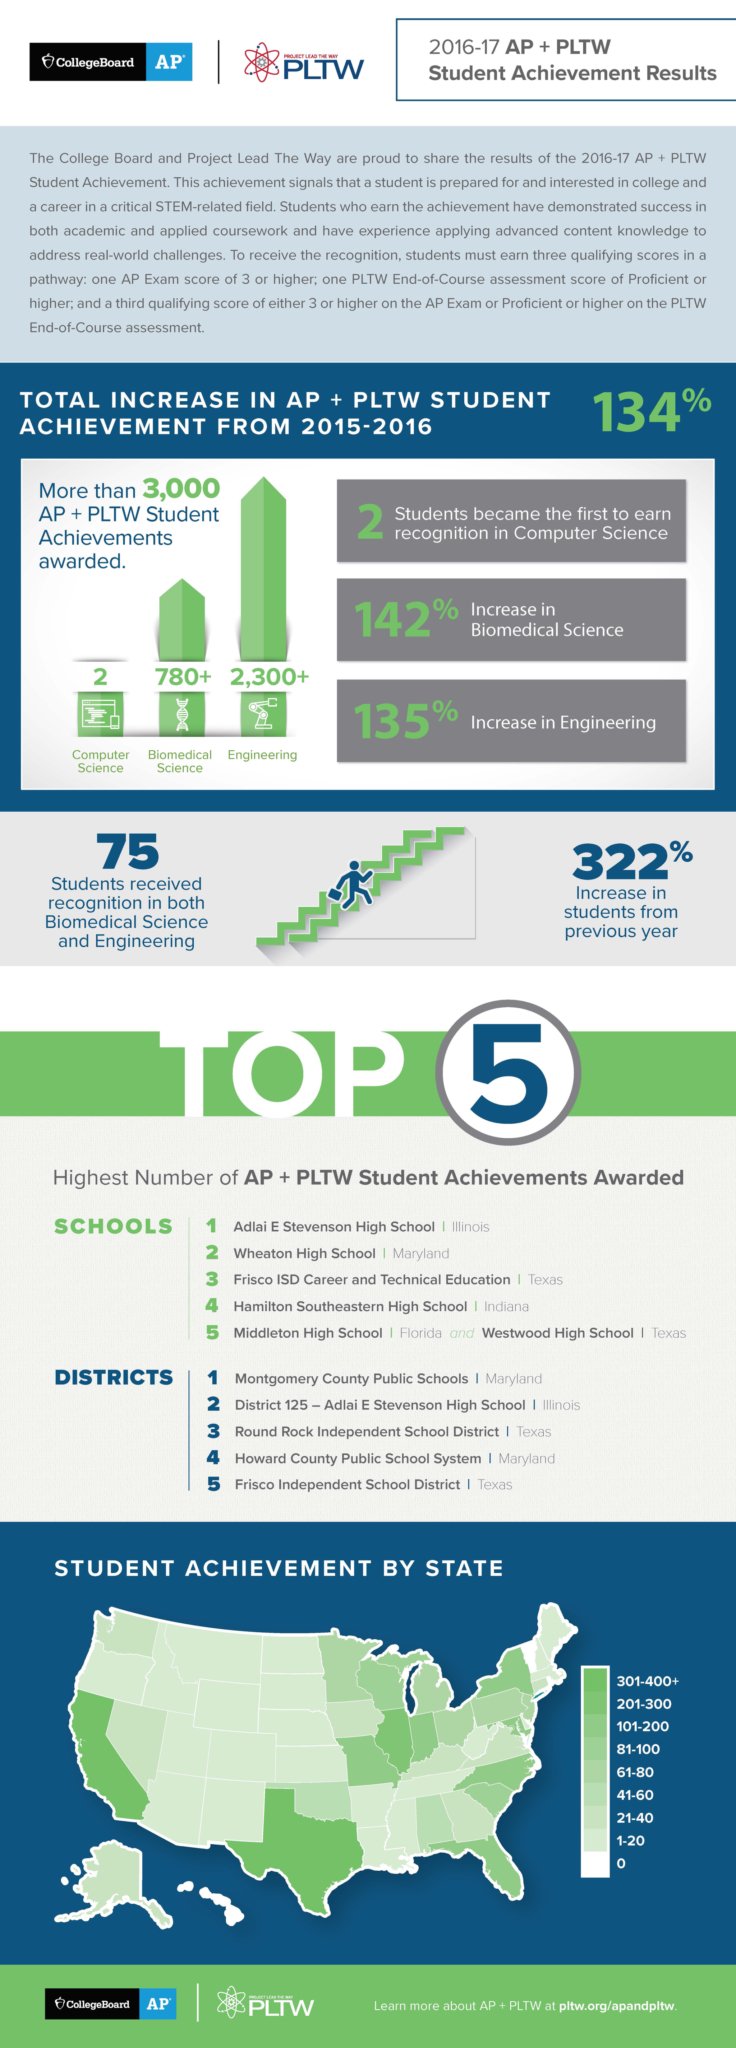 2016-17 AP + PLTW Student Achievement Results